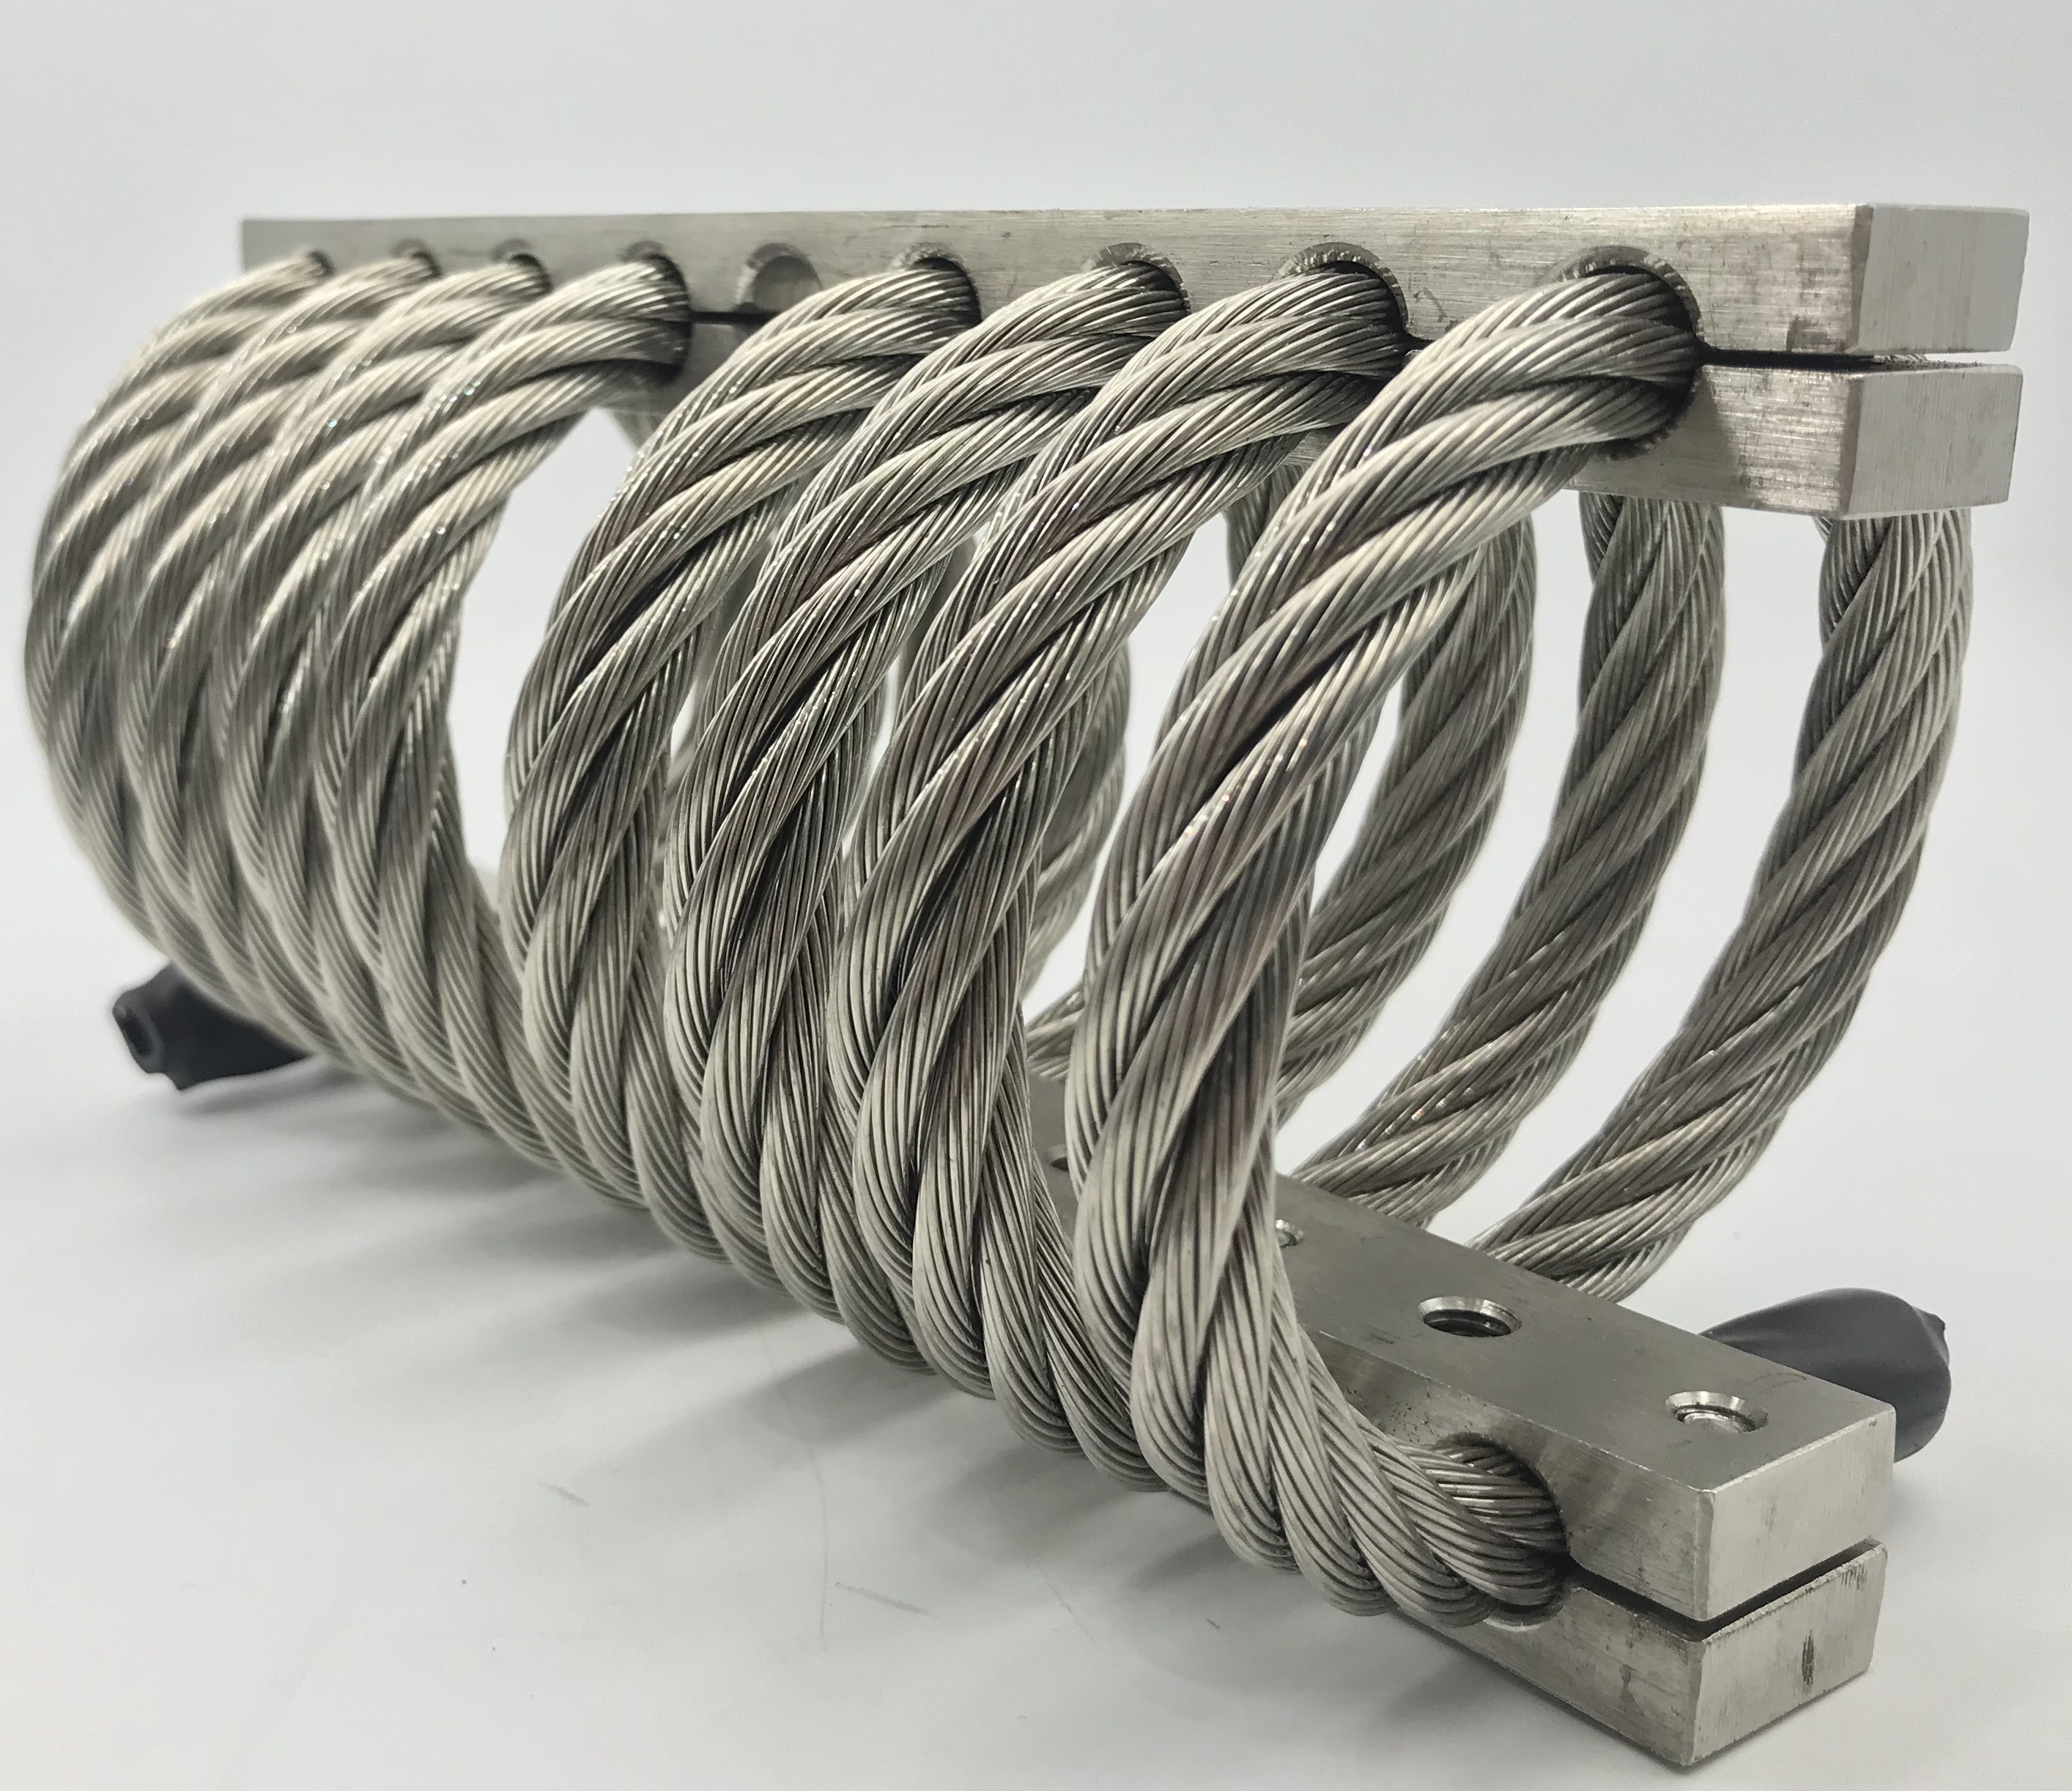 Amortisseur de vibration durable de câble métallique d'acier inoxydable avec la longue durée de vie